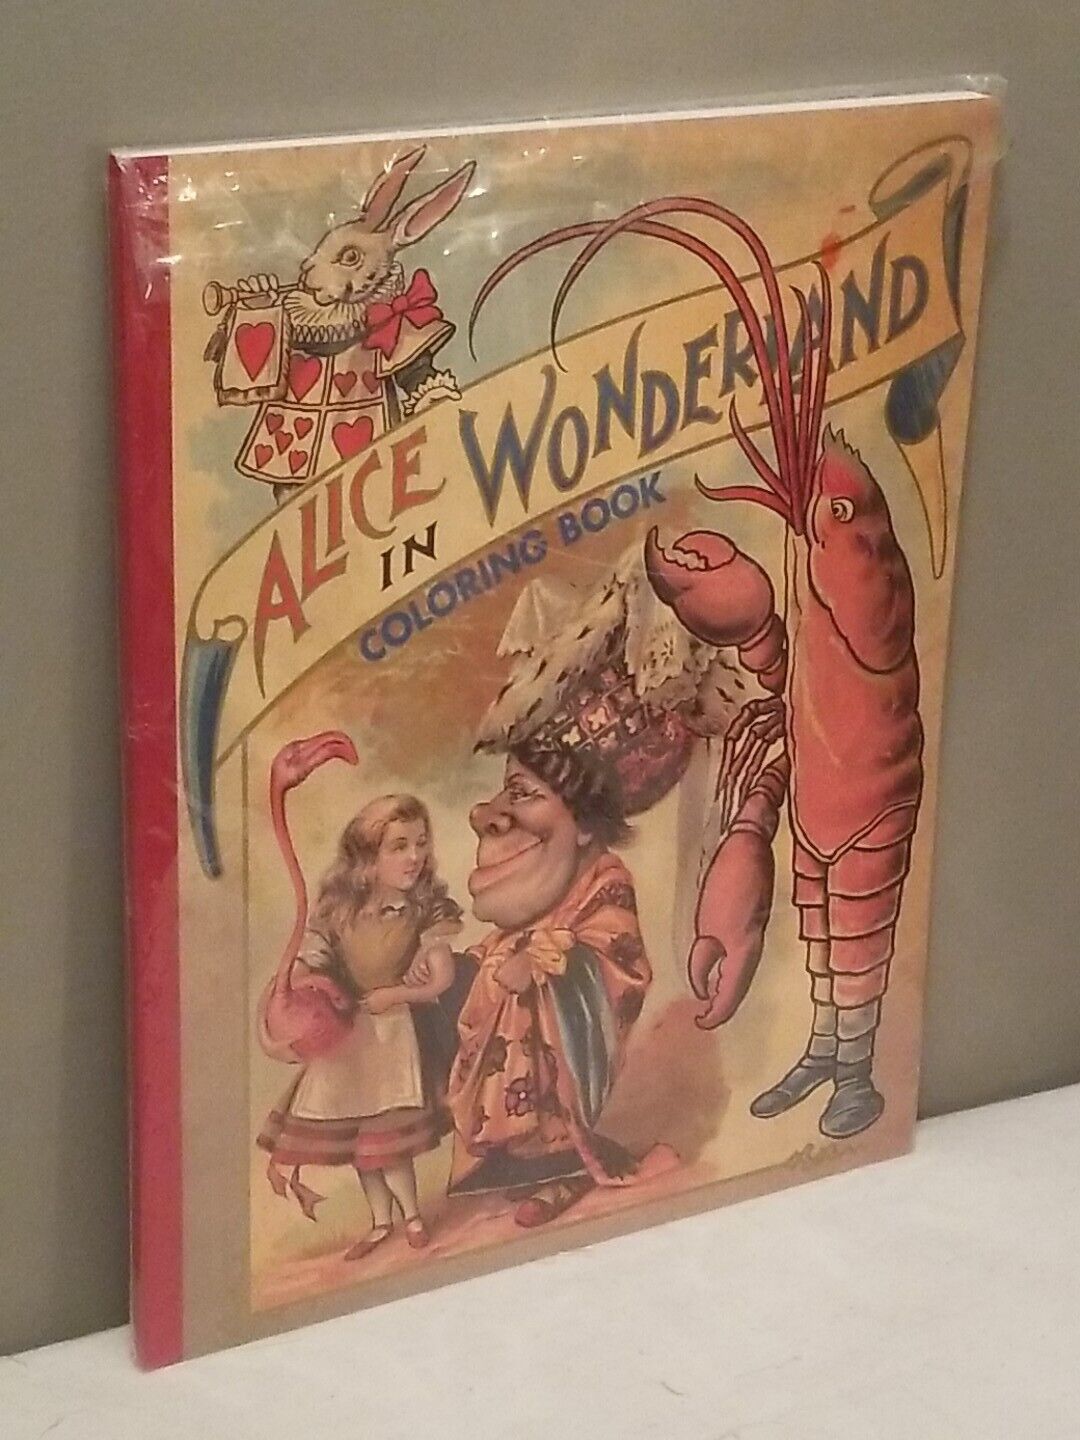 Vintage Alice in Wonderland Coloring Book by Lewis Carrol